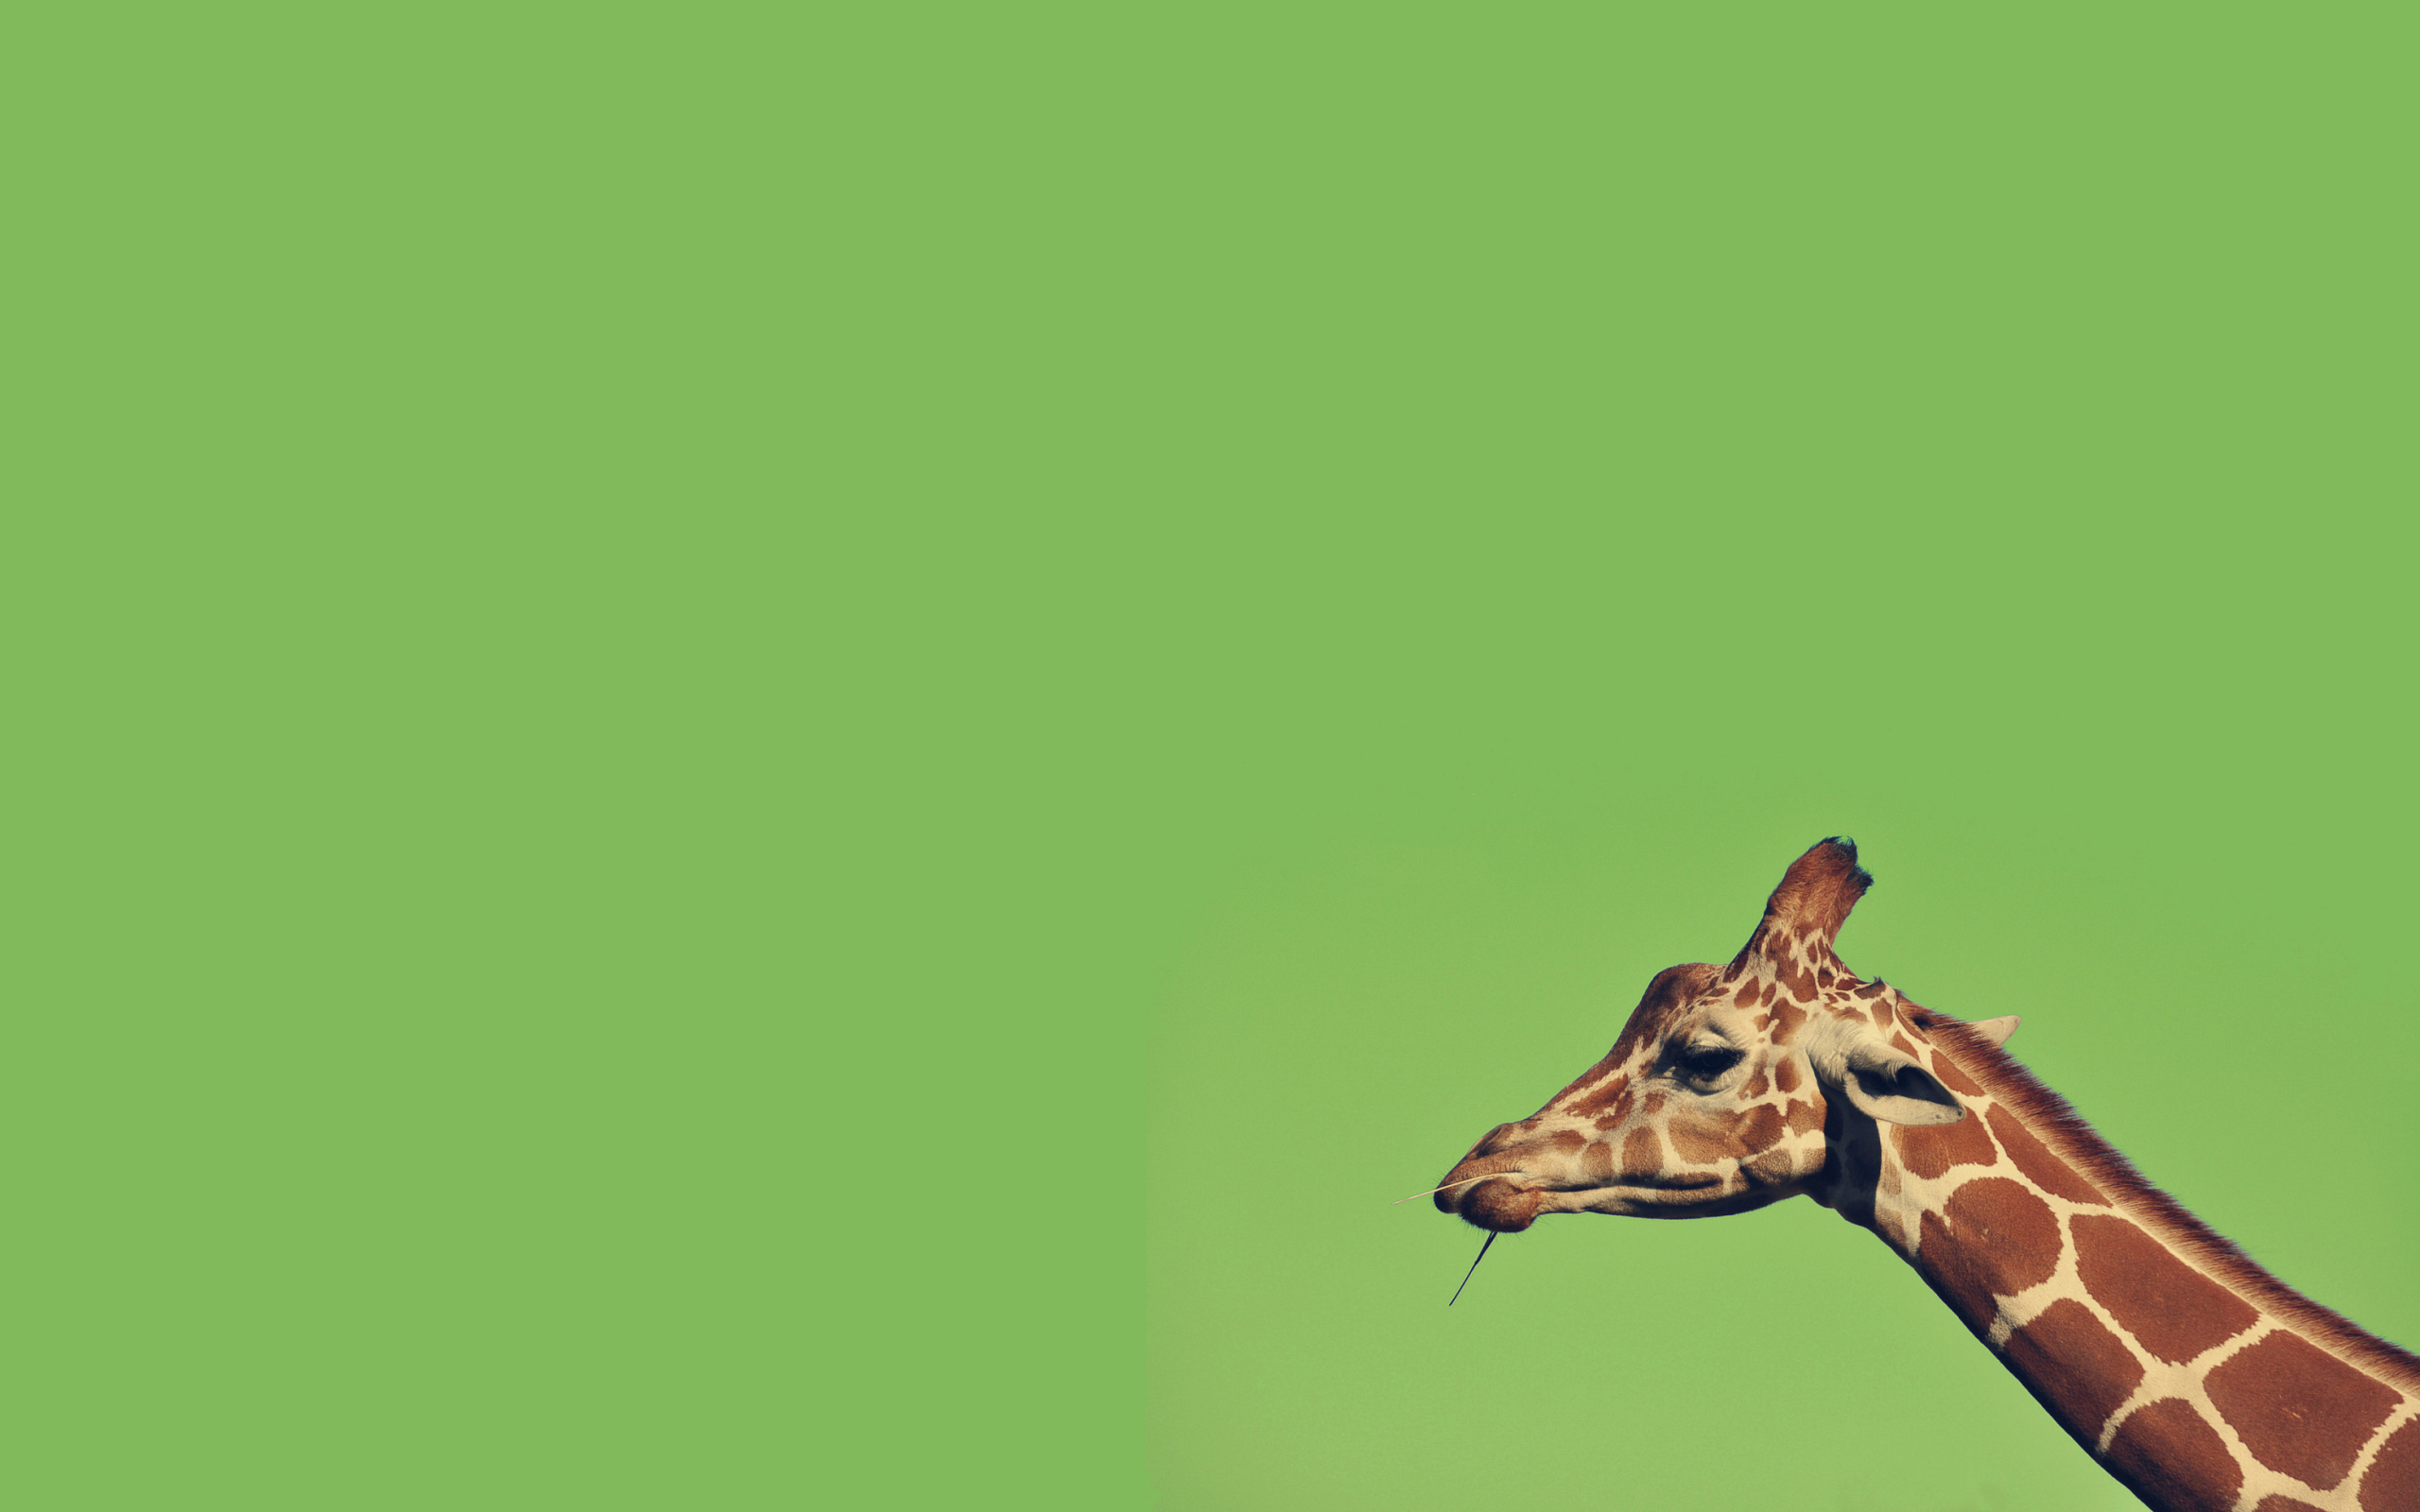 Giraffe wallpaper 2560x1600